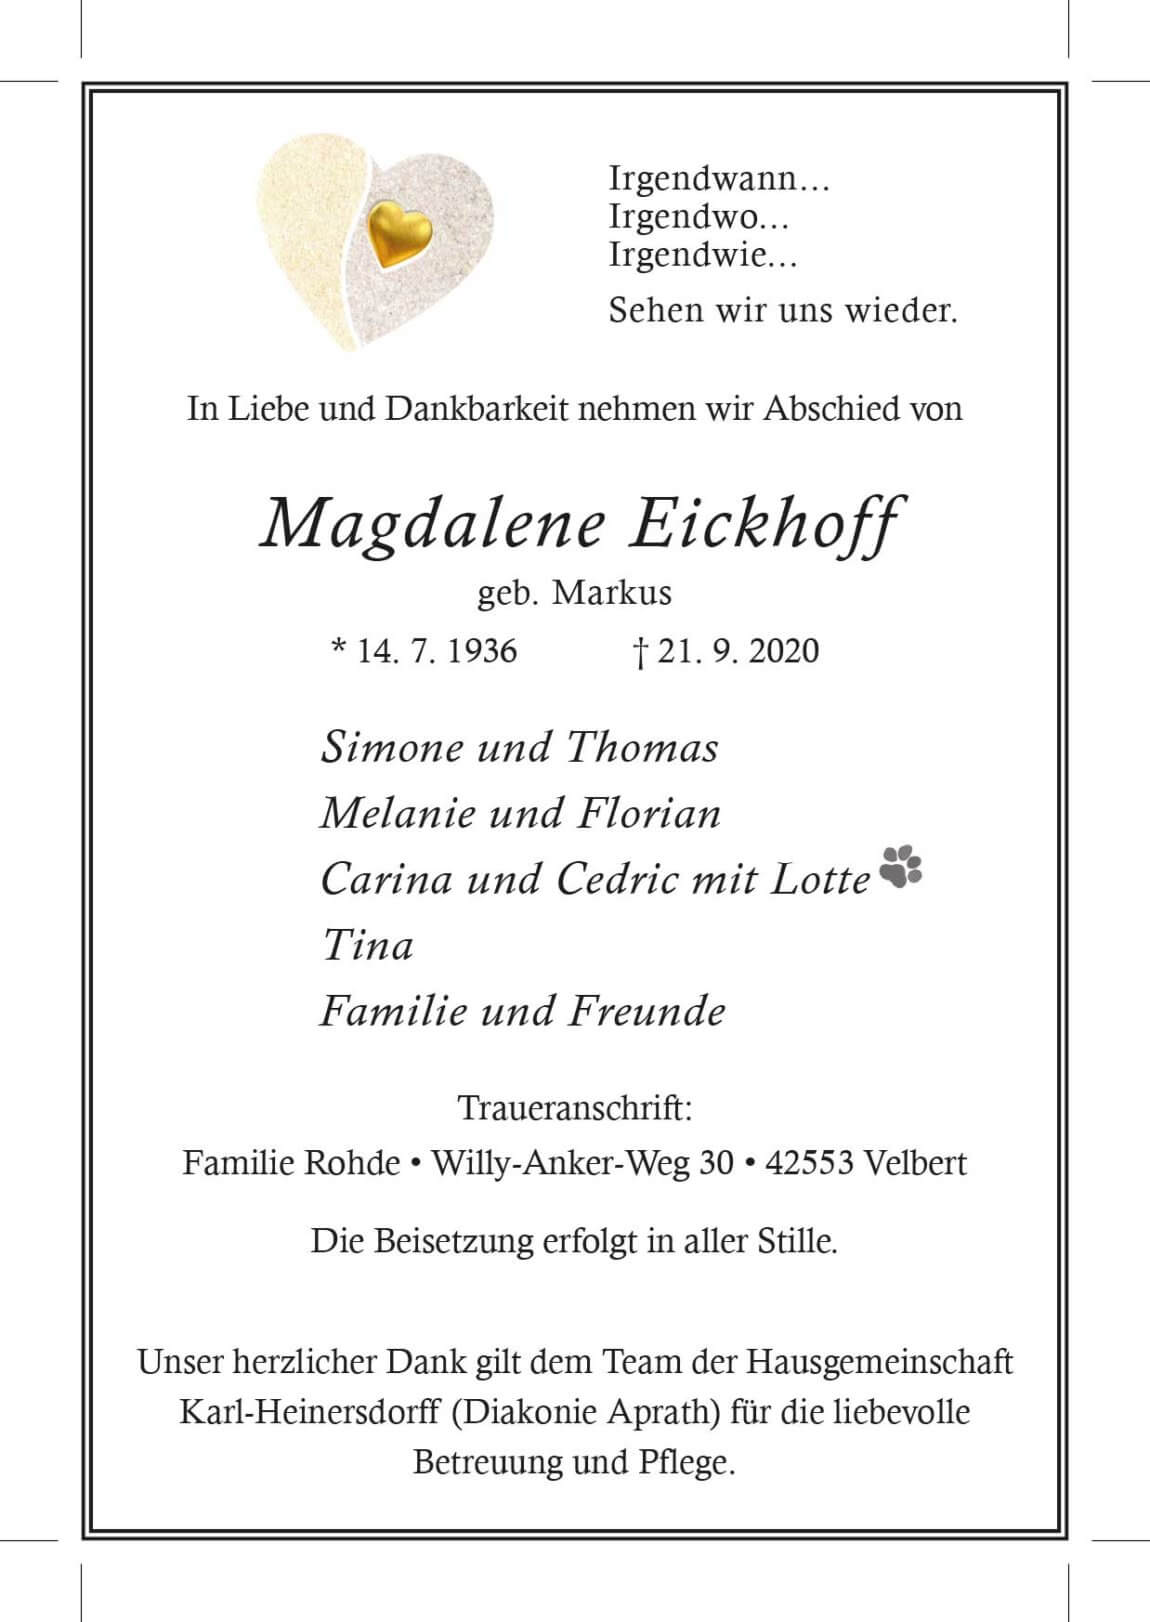 26.09.2020_Eickhoff-Magdalene.jpg